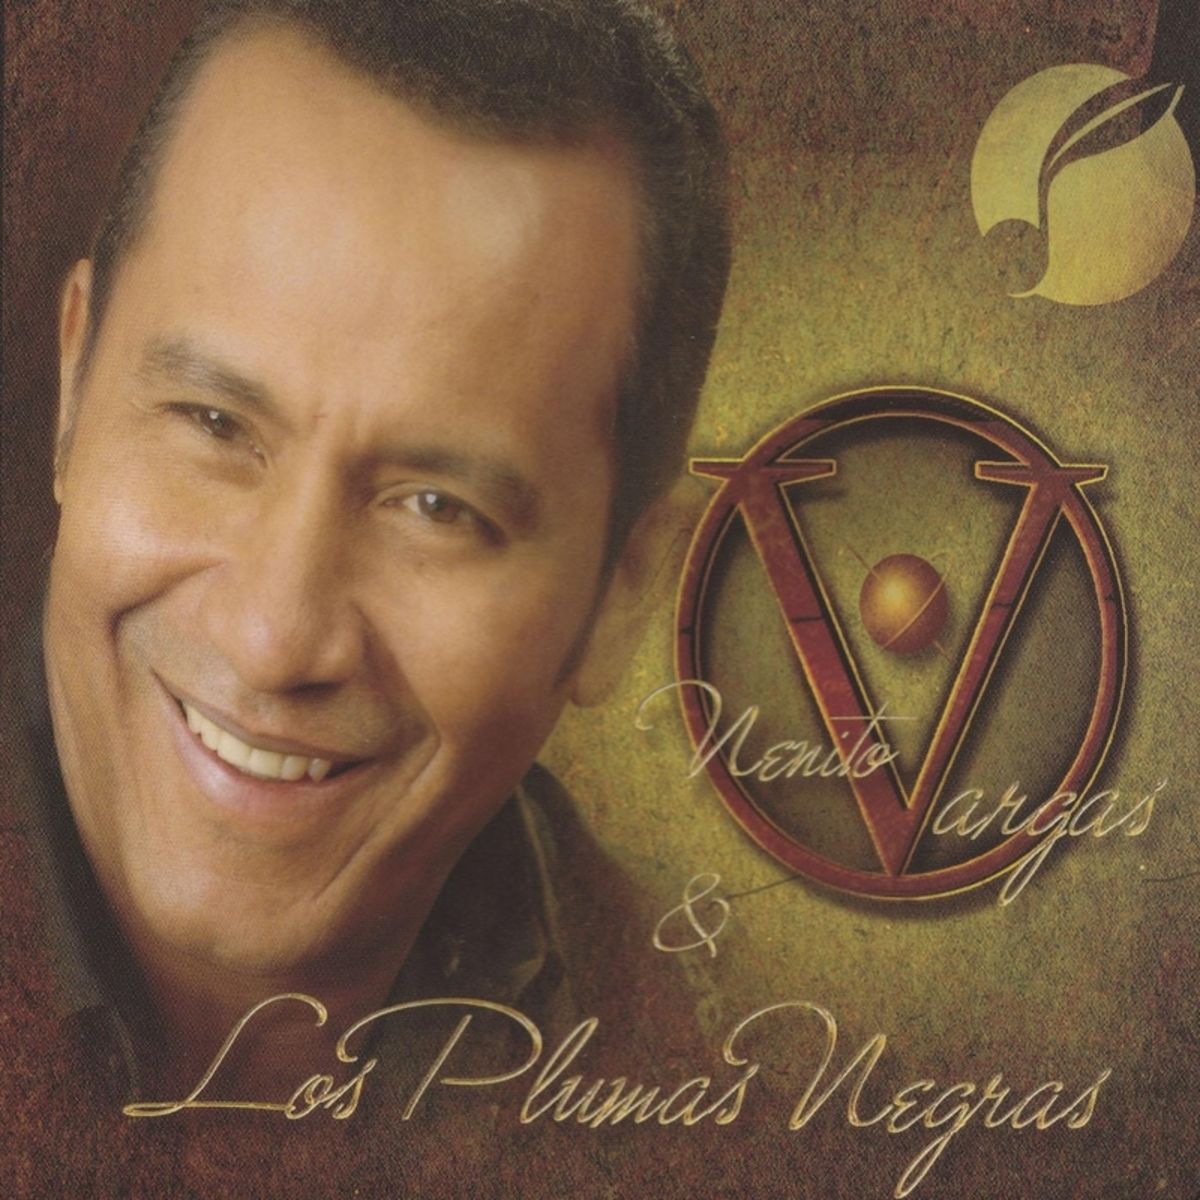 6 - Nenito Vargas y los Plumas Negras - Condena de Amor.mp3